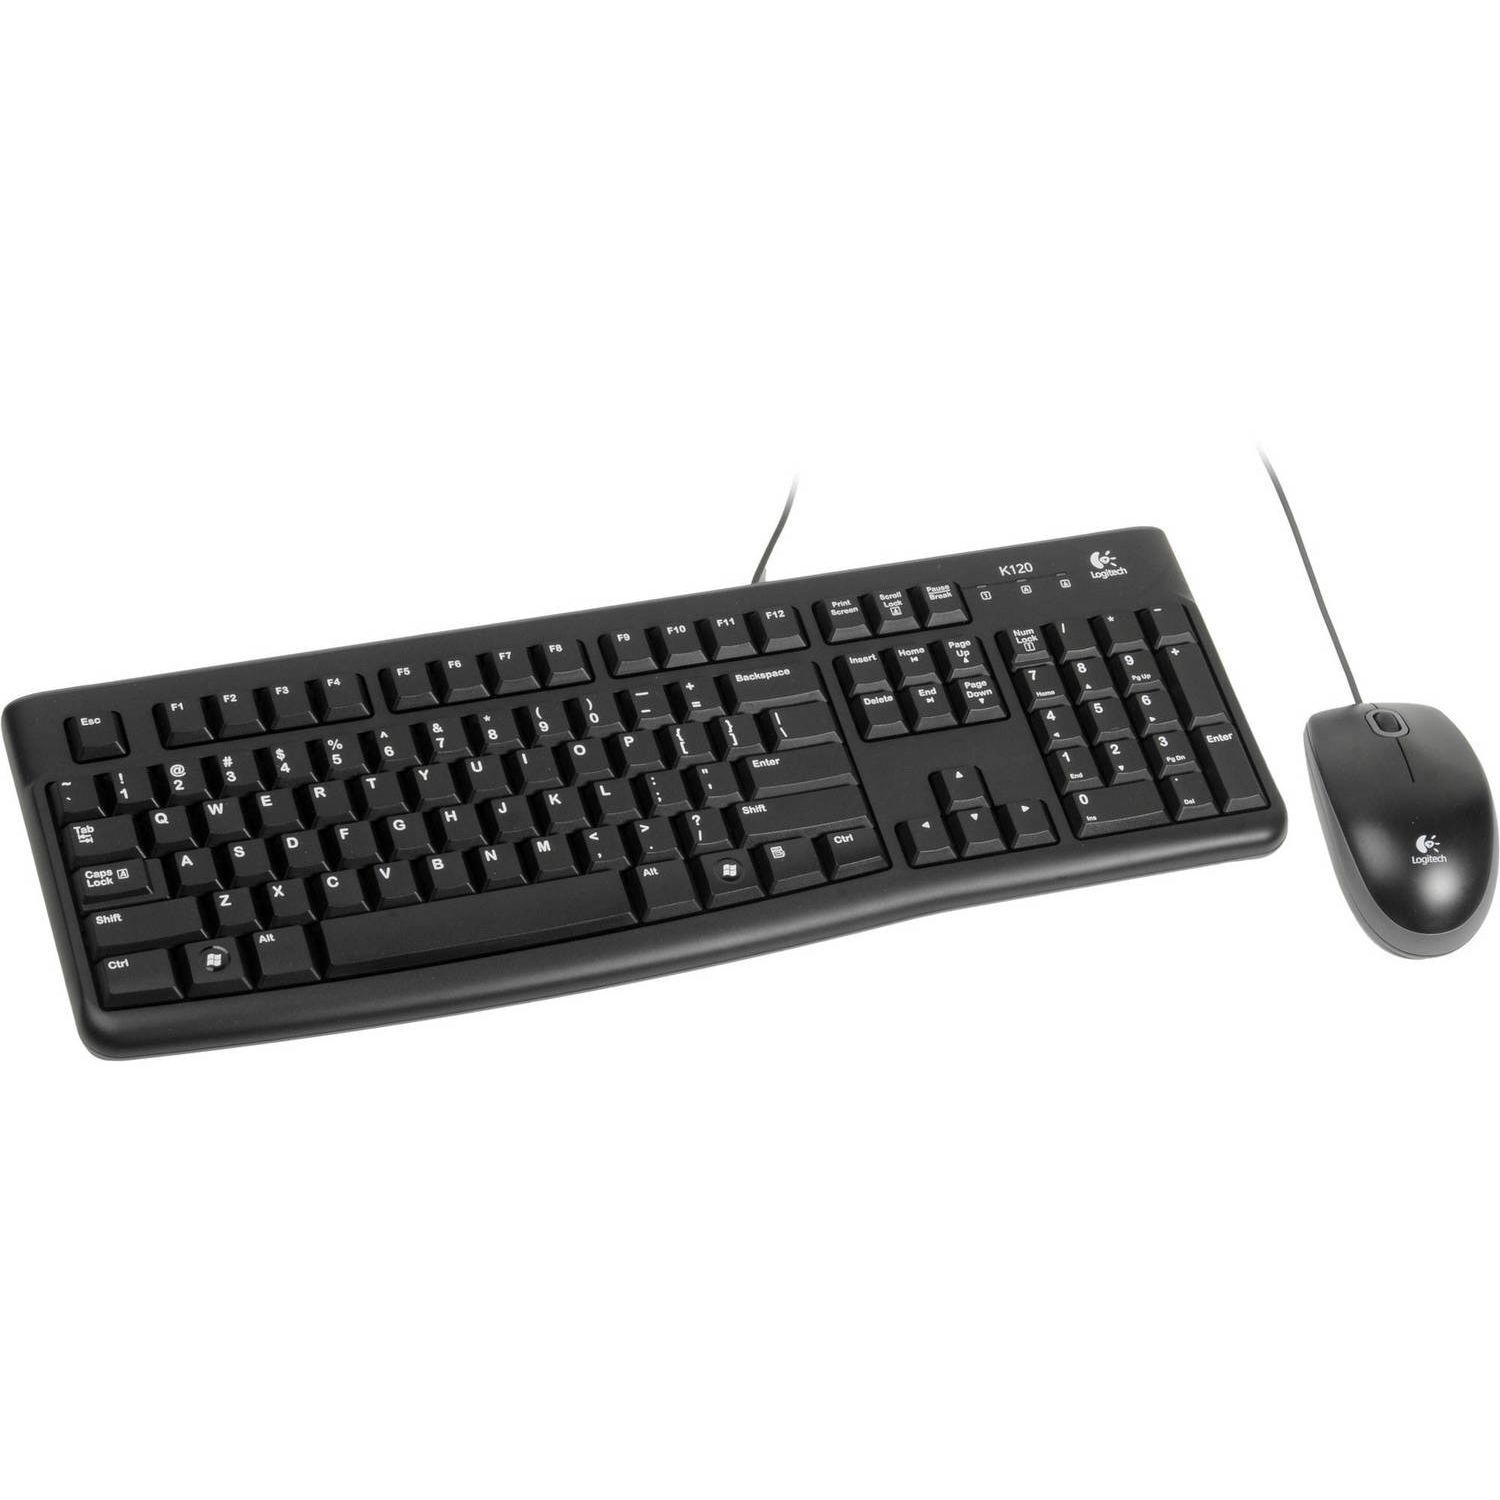 Комплект клавиатура и мышь Logitech Комплект Logitech Desktop MK121 цвет черный, USB, RTL Logitech